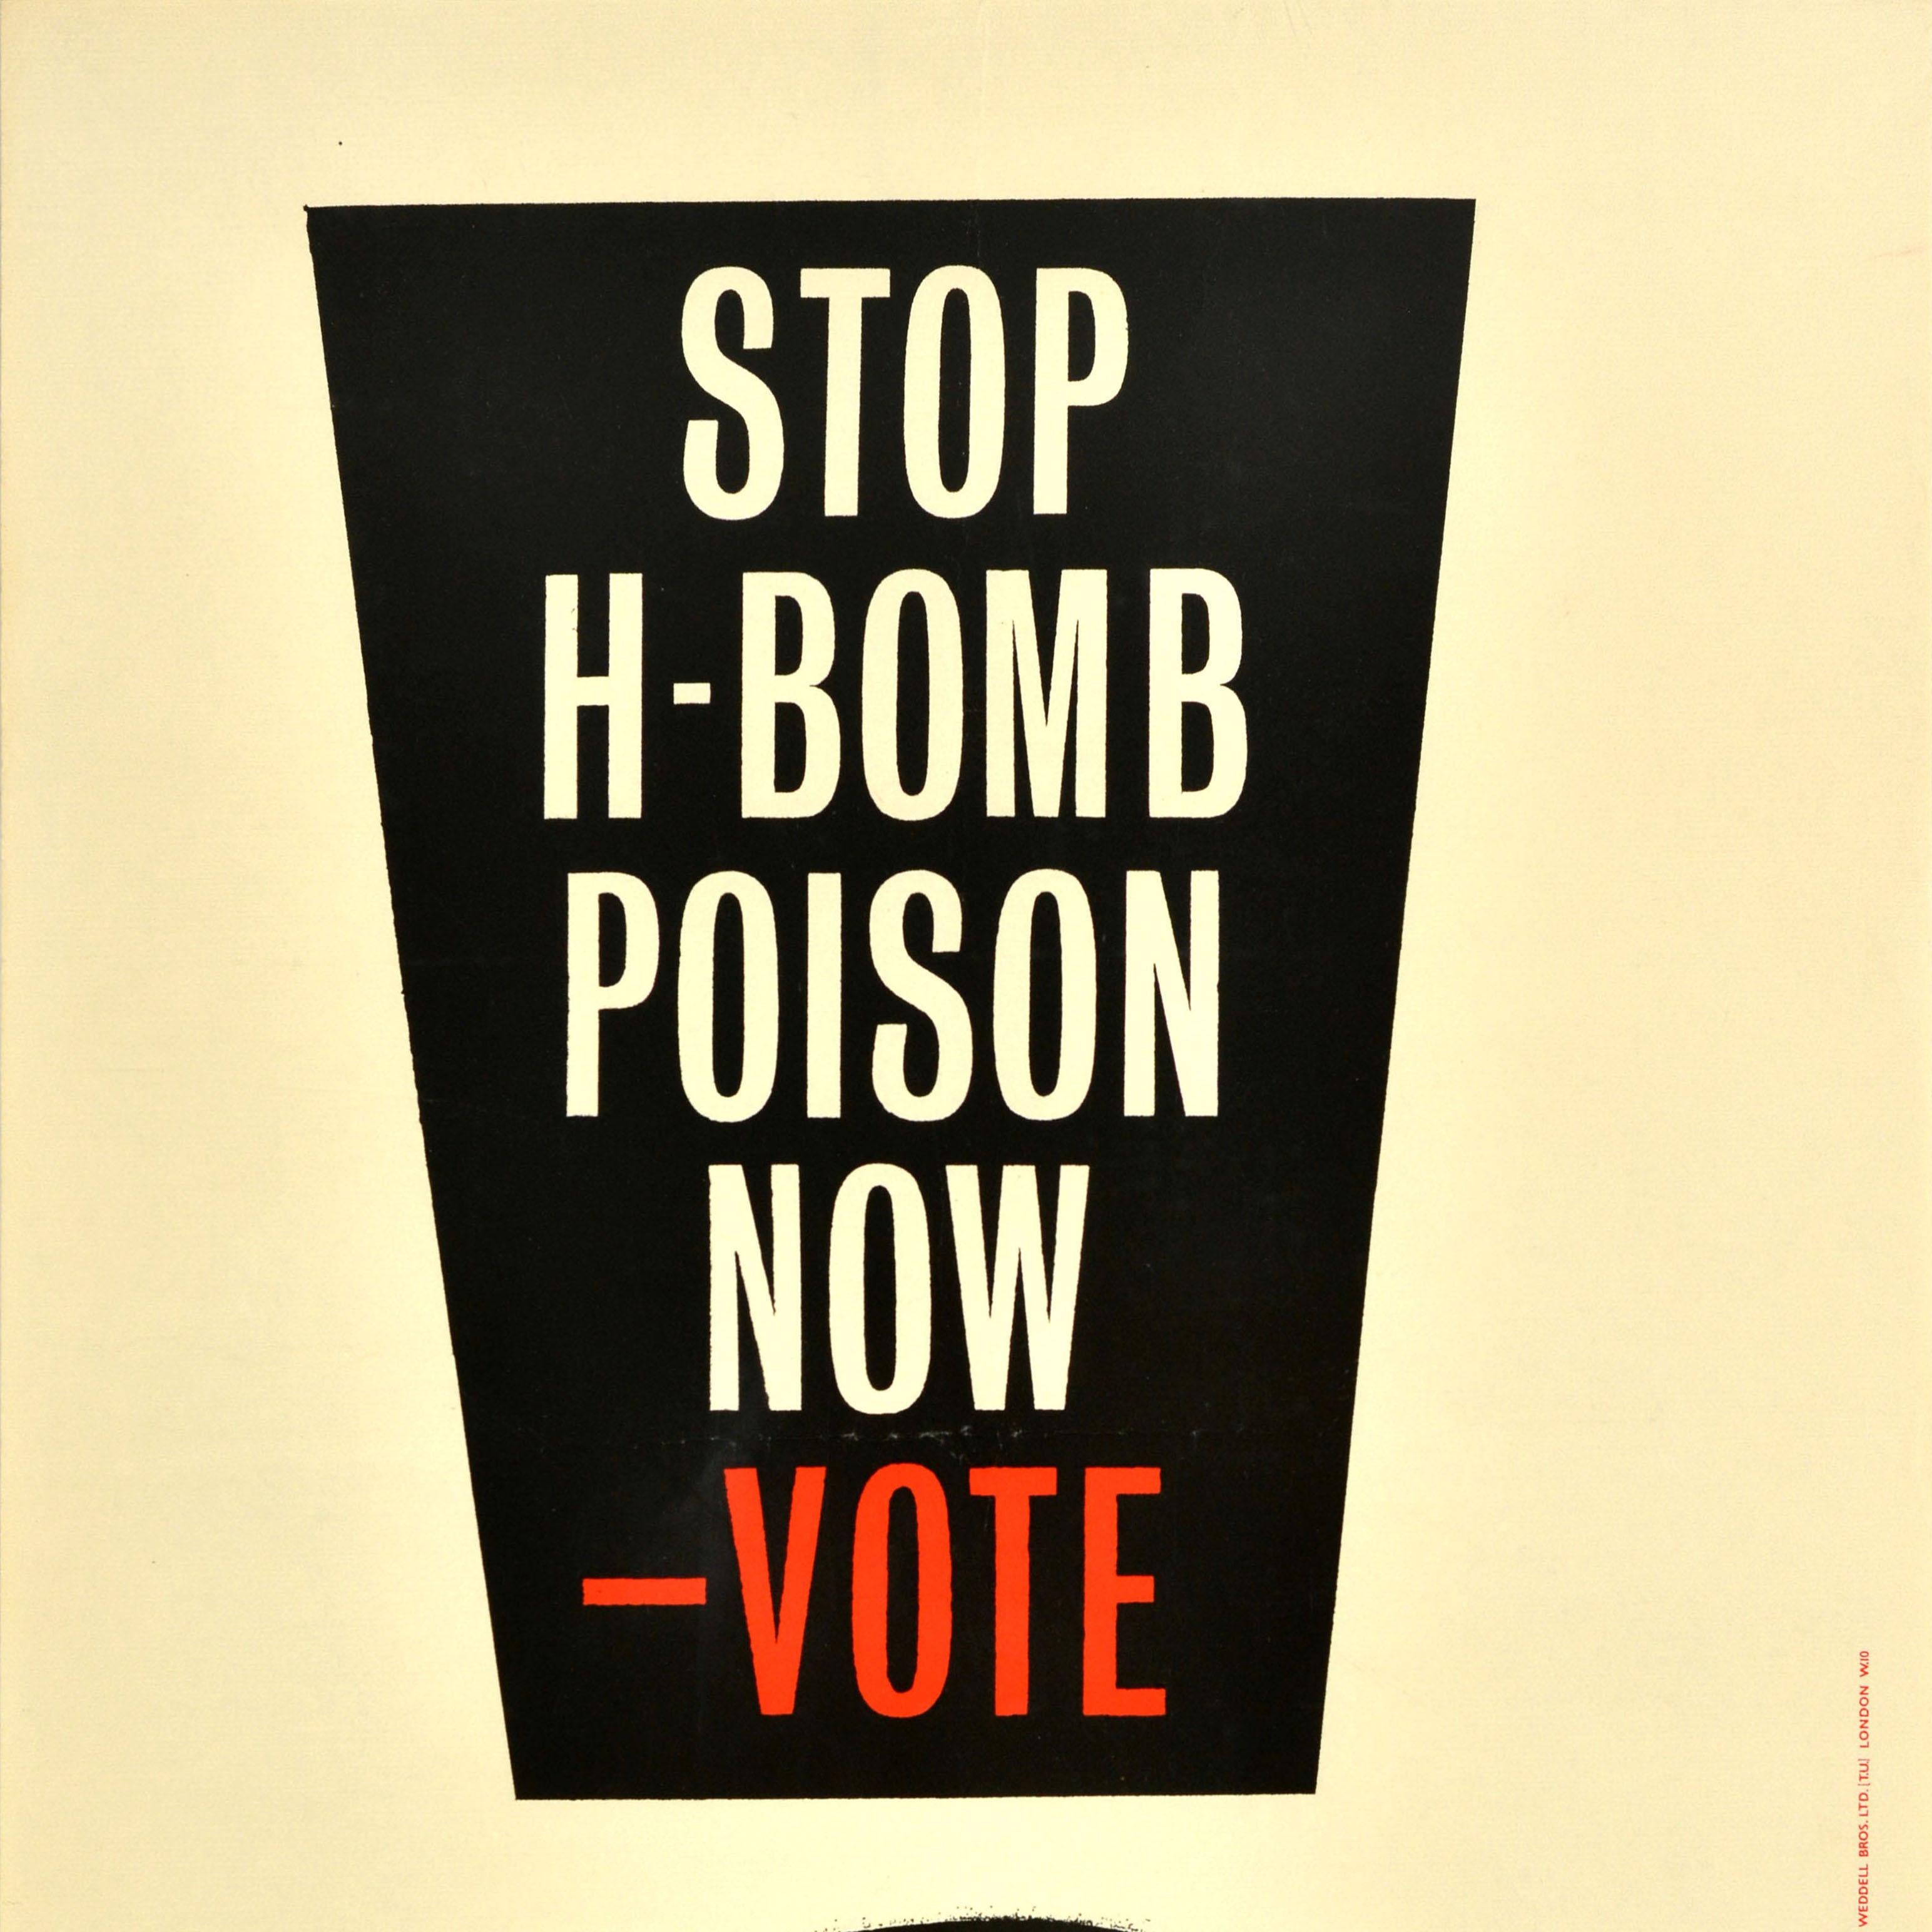 Affiche politique originale d'époque pour les élections générales, publiée par le Parti travailliste contre la bombe à hydrogène, présentant un dessin dynamique avec des lettres blanches et rouges en gras à l'intérieur d'un point d'exclamation noir